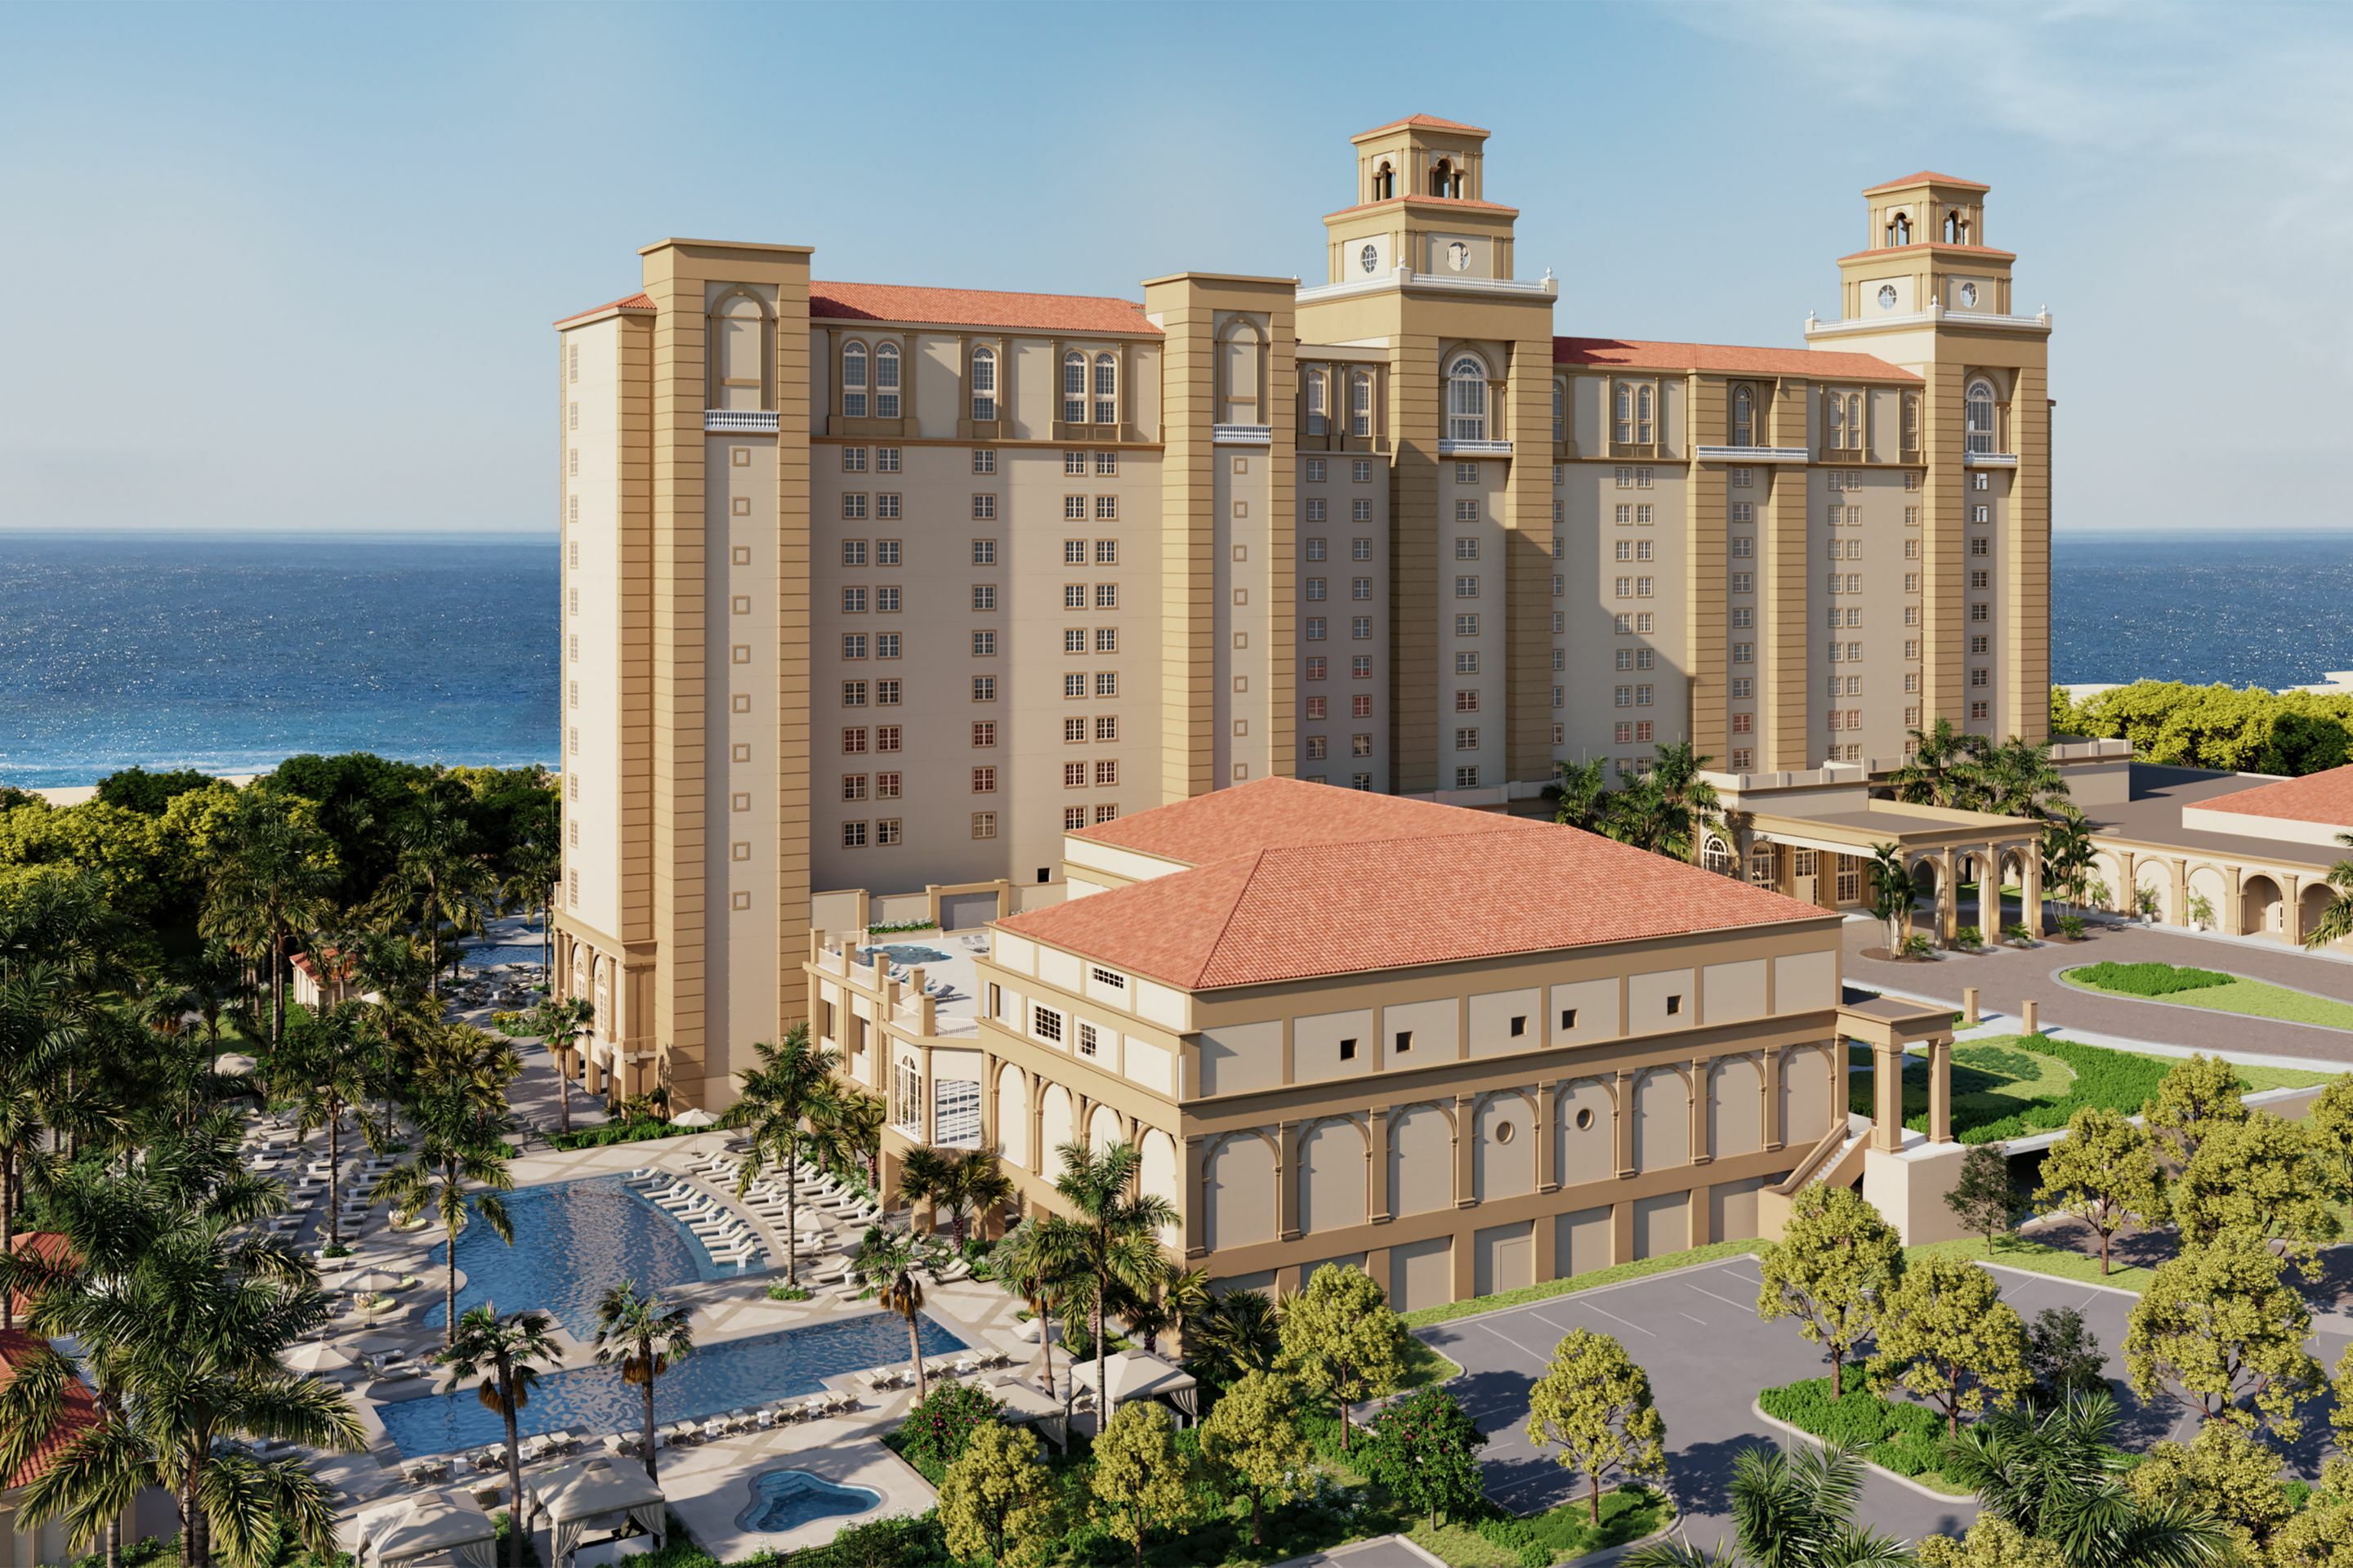 Photo of The Ritz-Carlton, Naples, Naples, FL